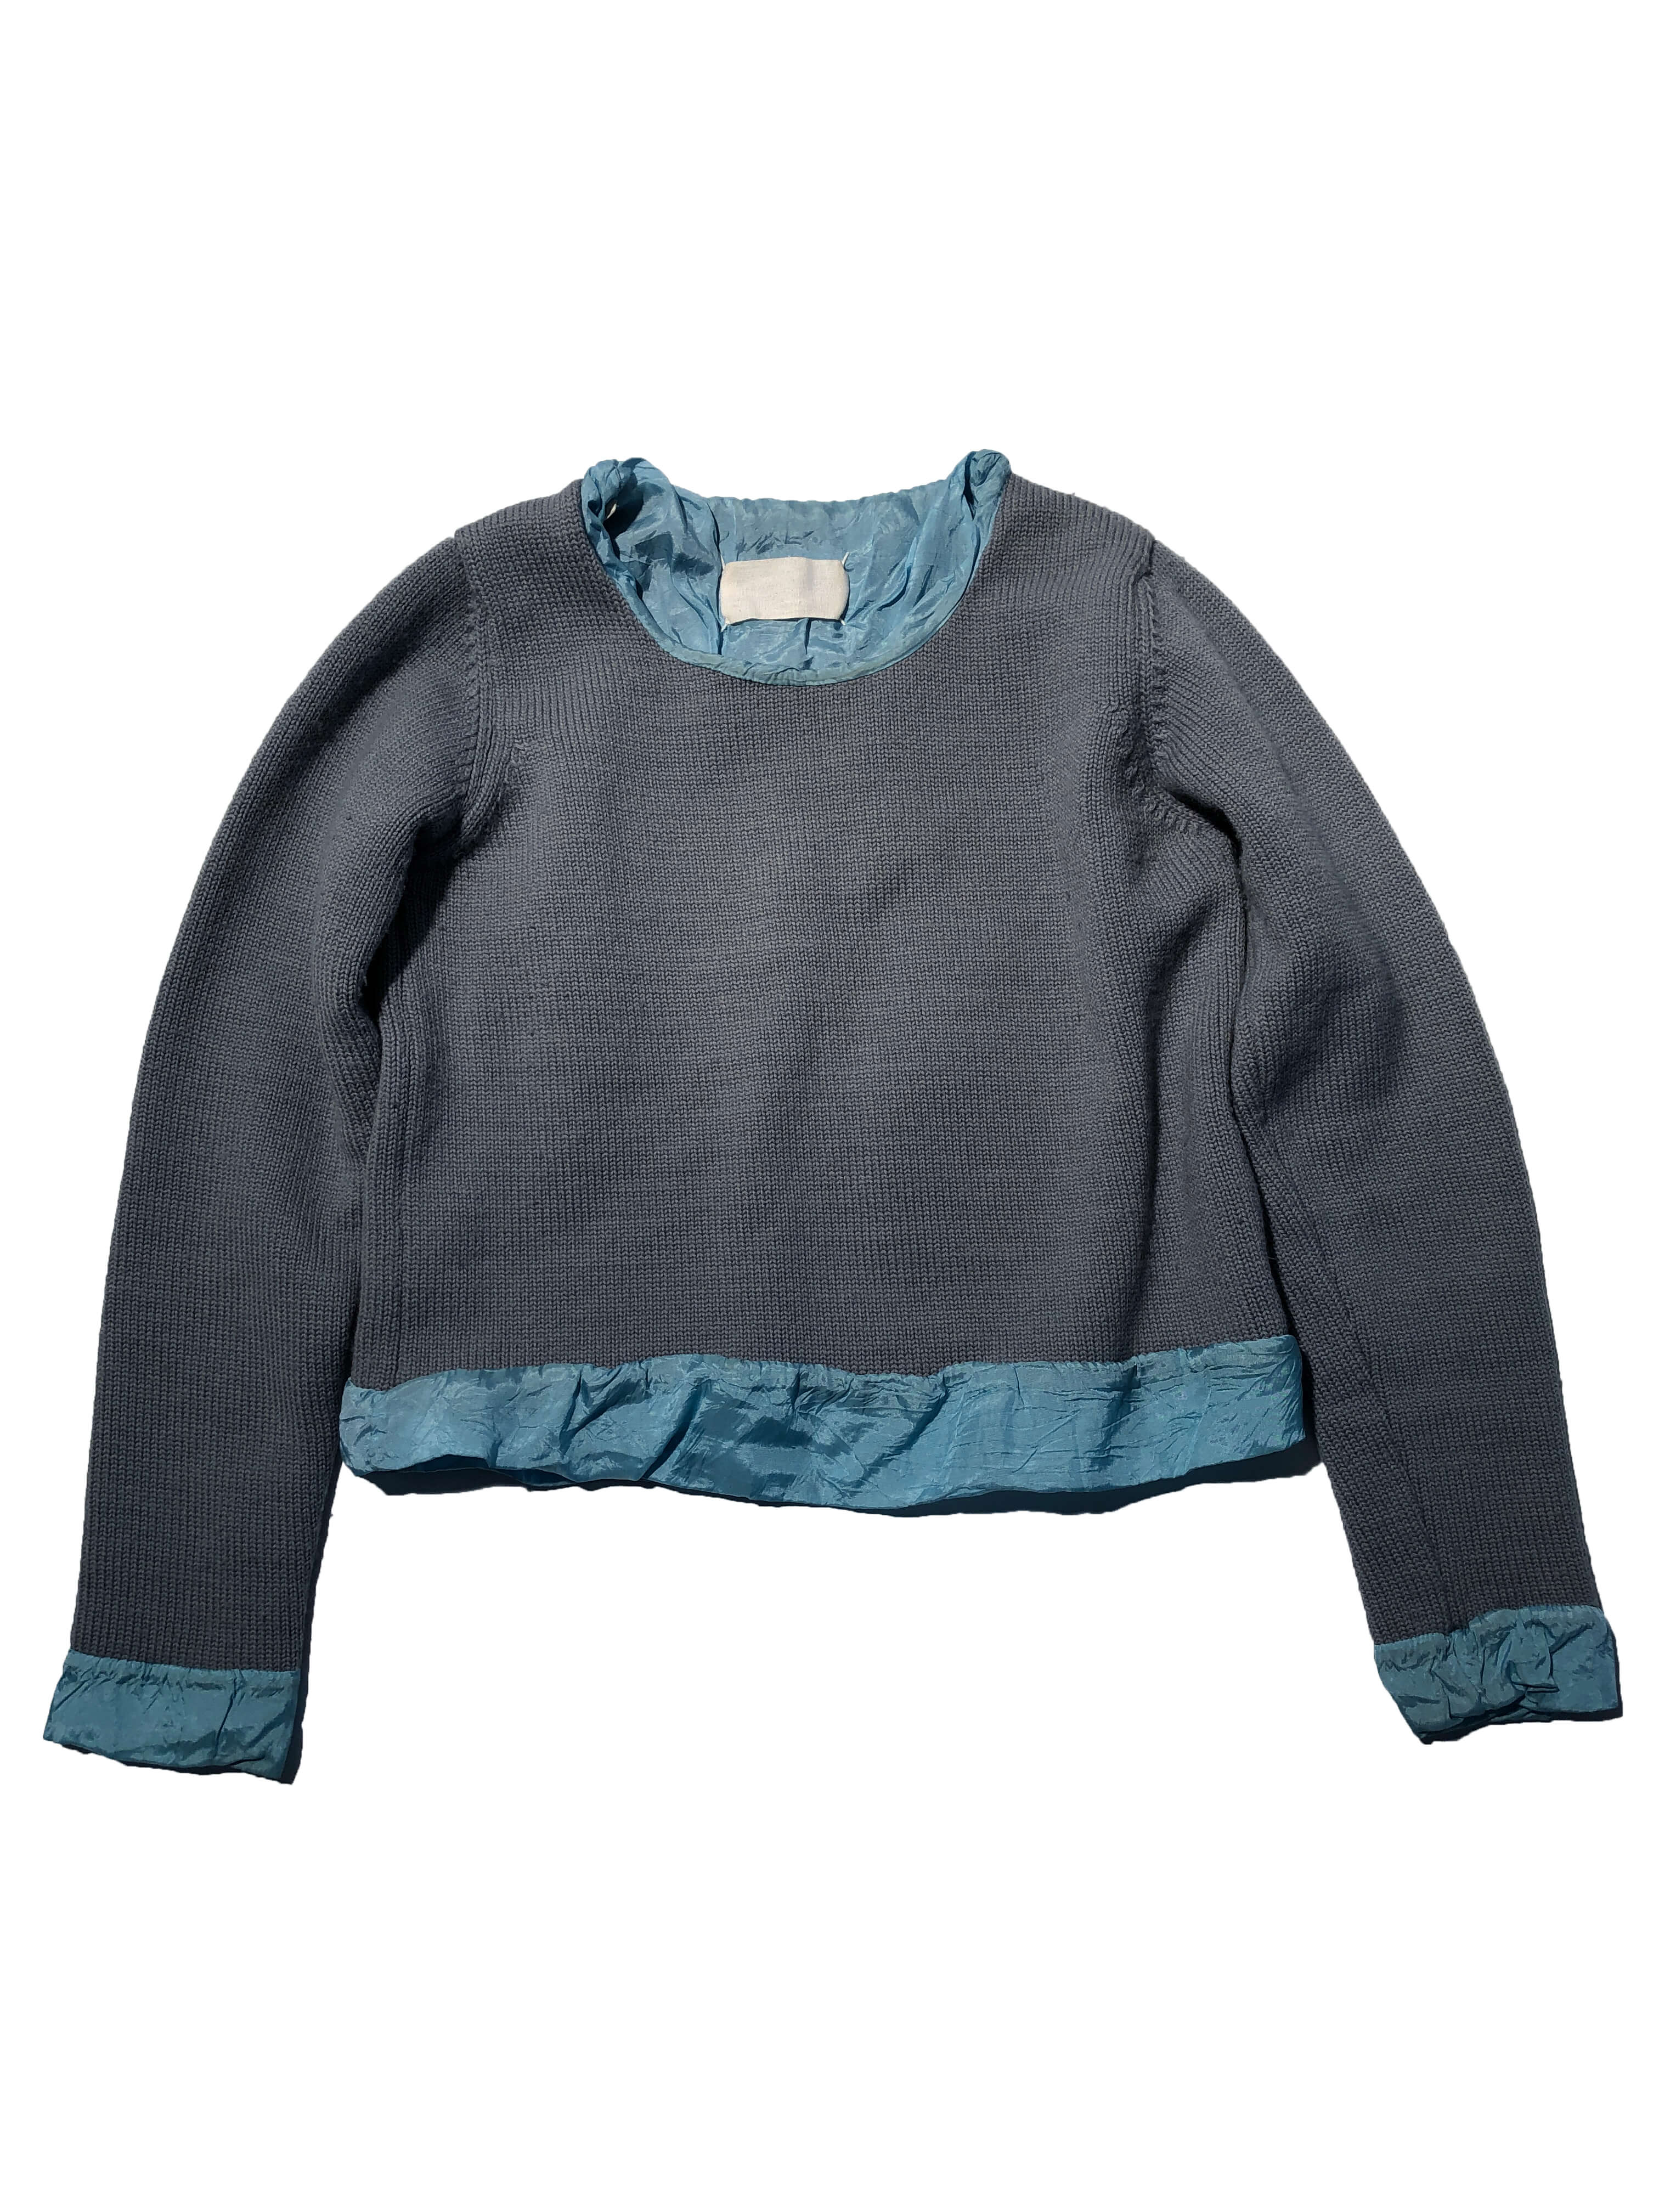 Martin Margiela 1996fw sweater